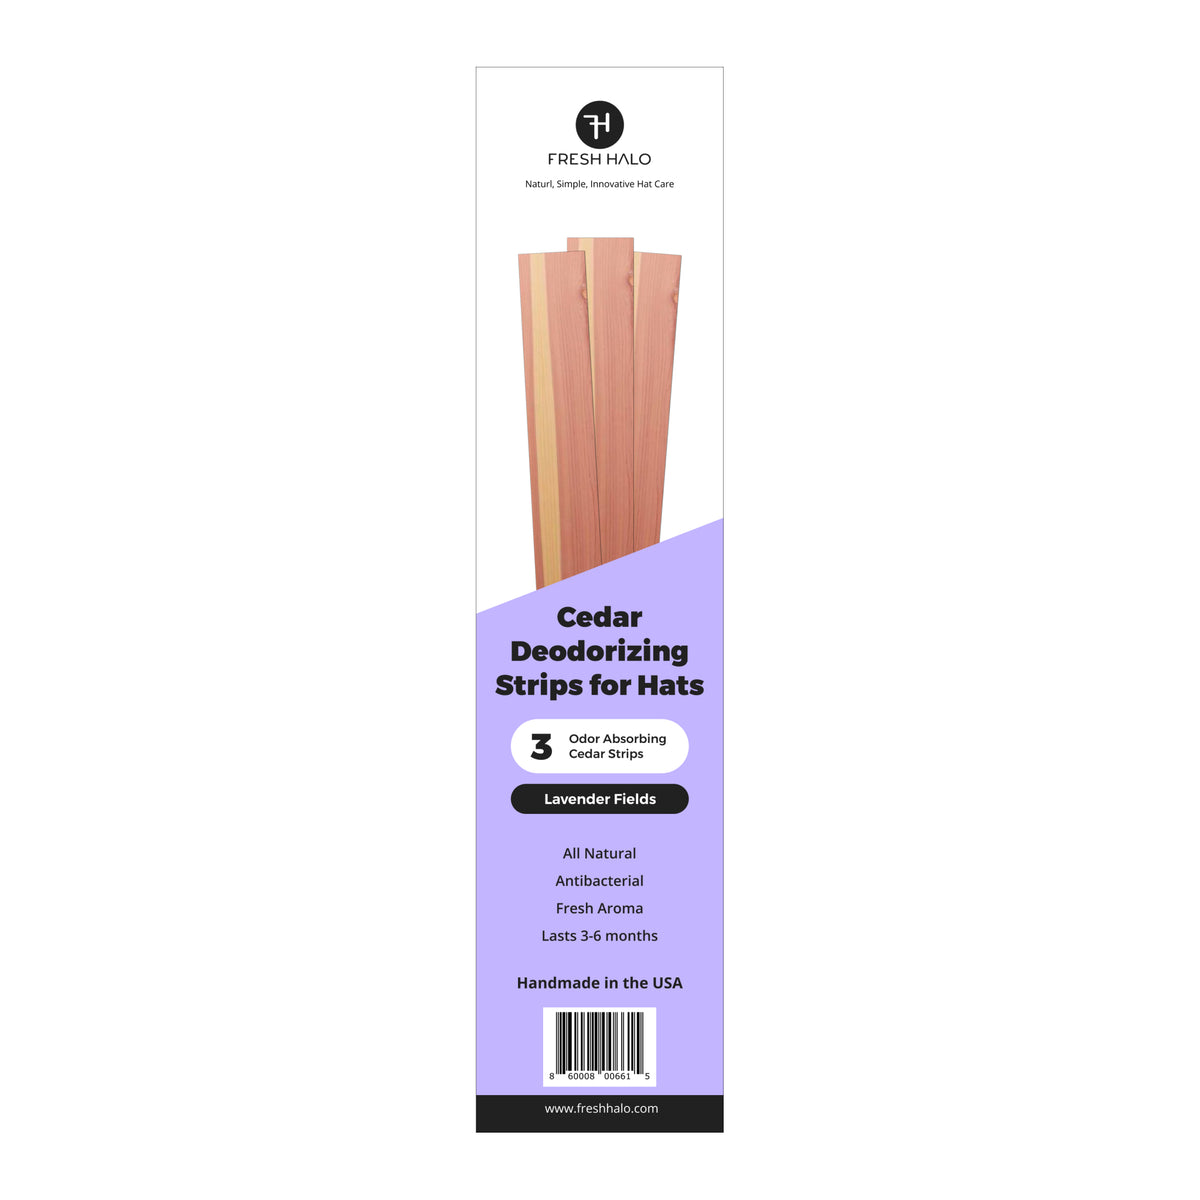 Cedar Deodorizing Strips for Hats - Lavender Fields